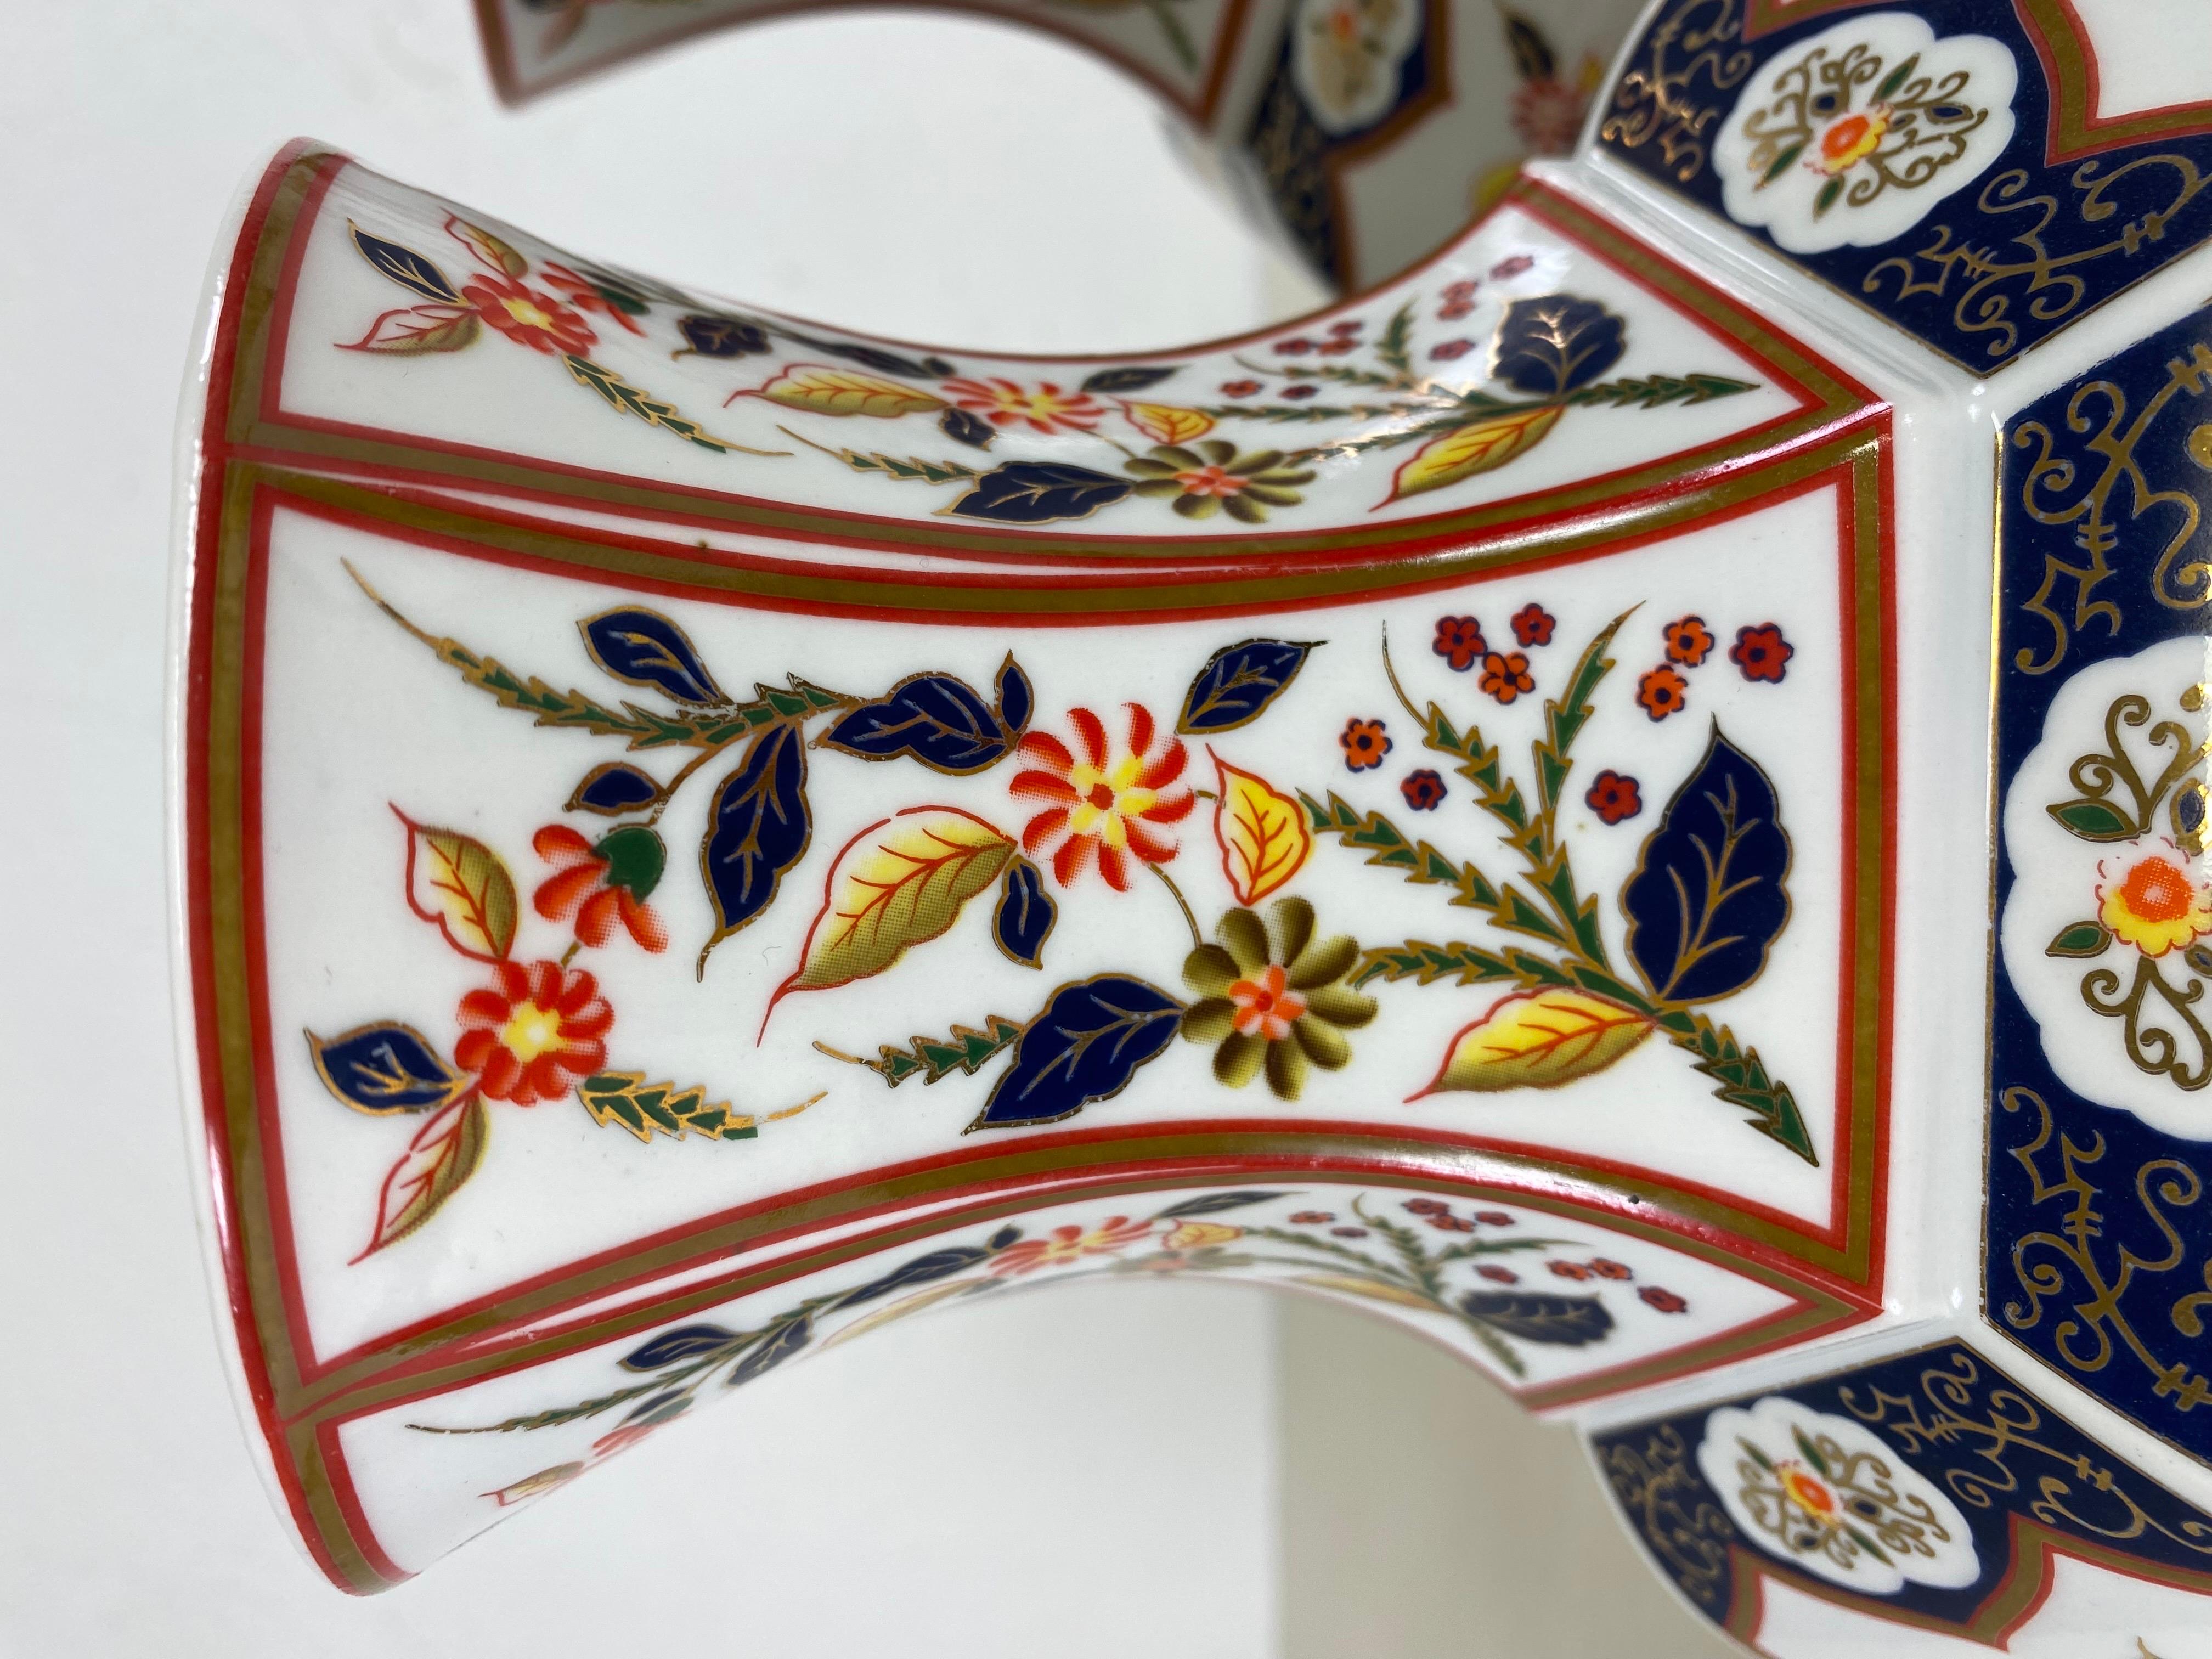 Dies ist ein Paar japanischer Export-Imari-Vasen aus der Mitte des Jahrhunderts. Diese Porzellanvasen haben ein florales Motiv, das auf die gesamte Oberfläche der Vasen gemalt ist, und ein geometrisches Muster am Boden. Diese Vasen wurden um 1980 in